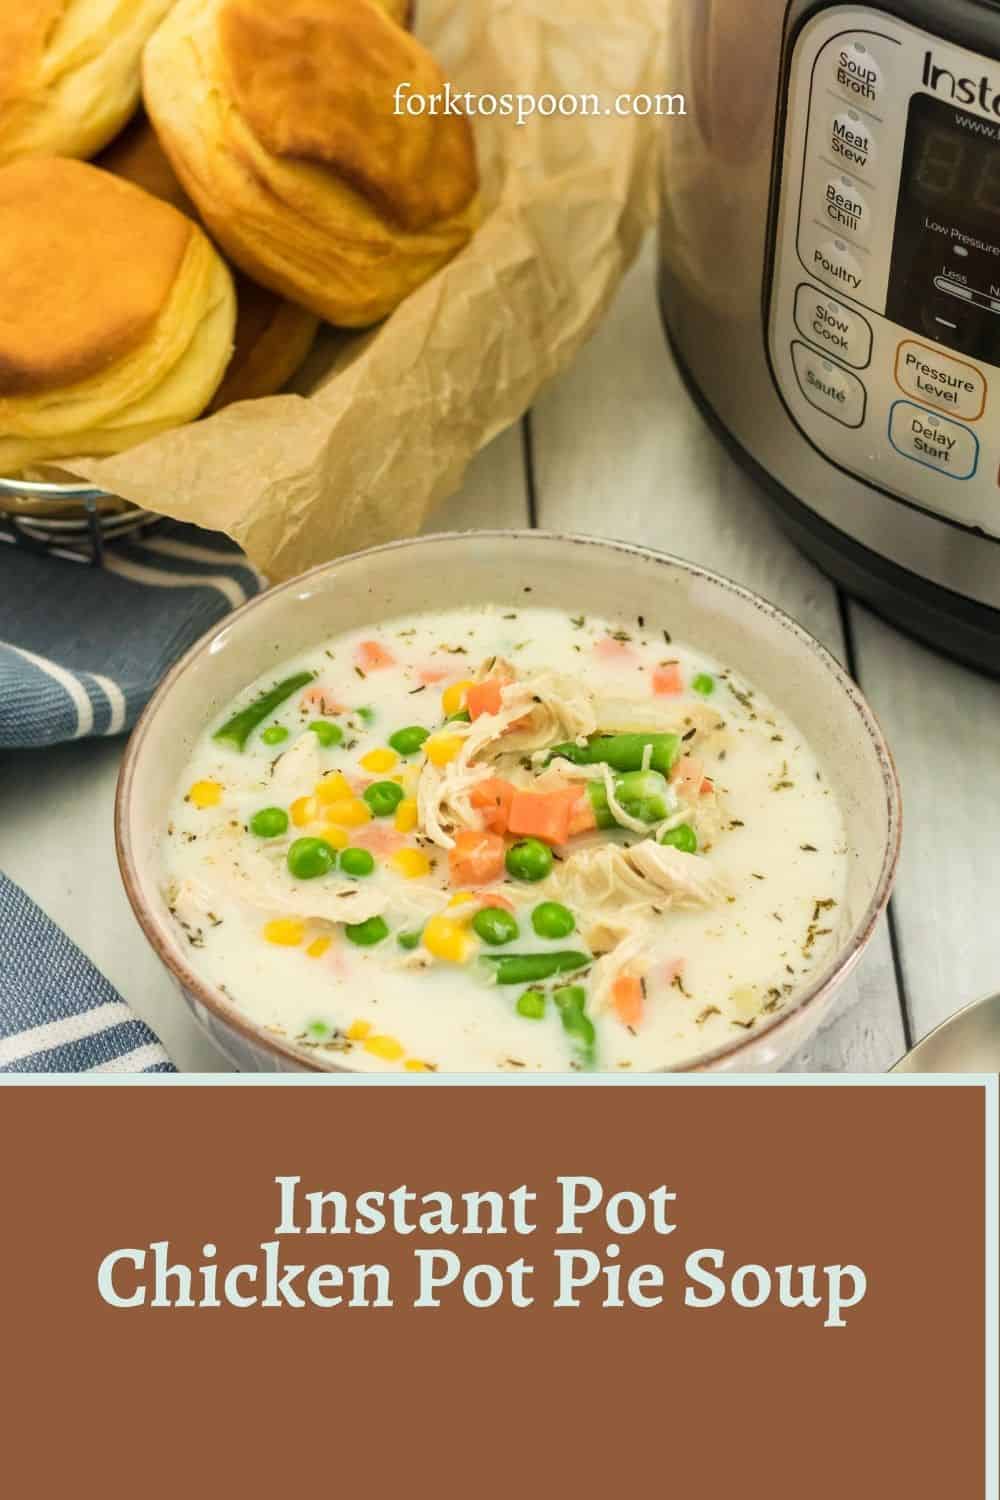 Instant Pot Chicken Pot Pie Soup